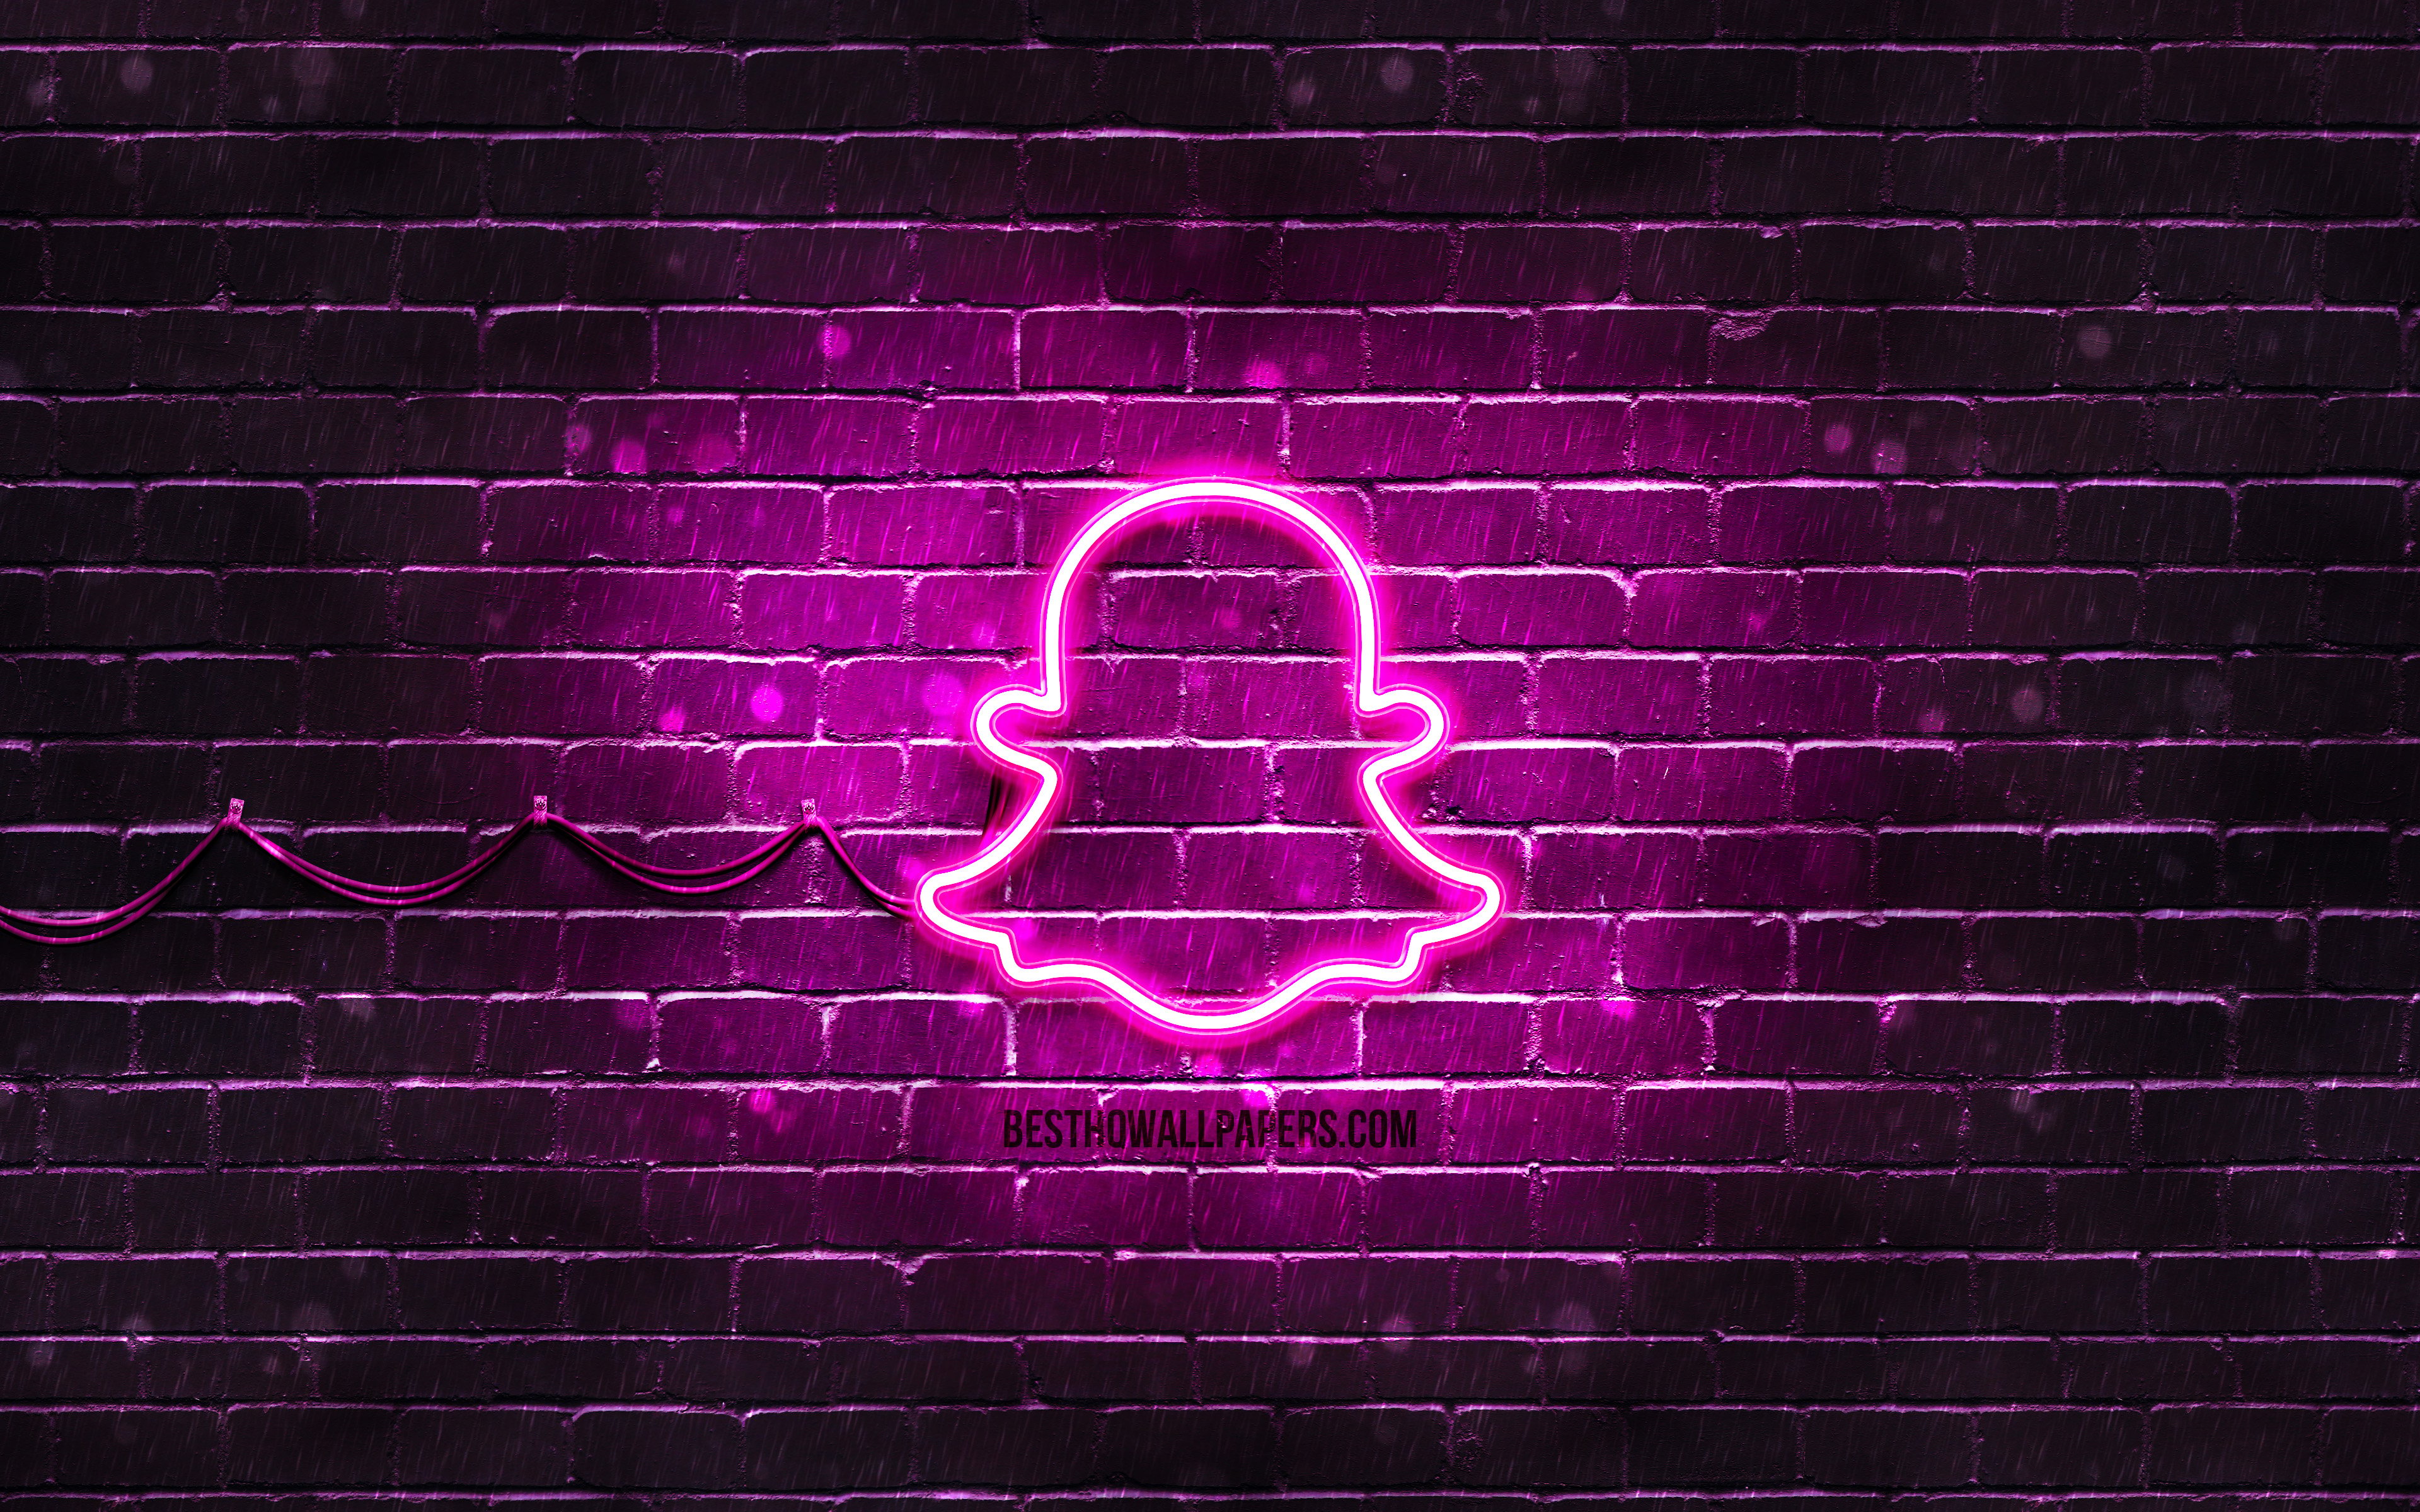 Download wallpaper Snapchat purple